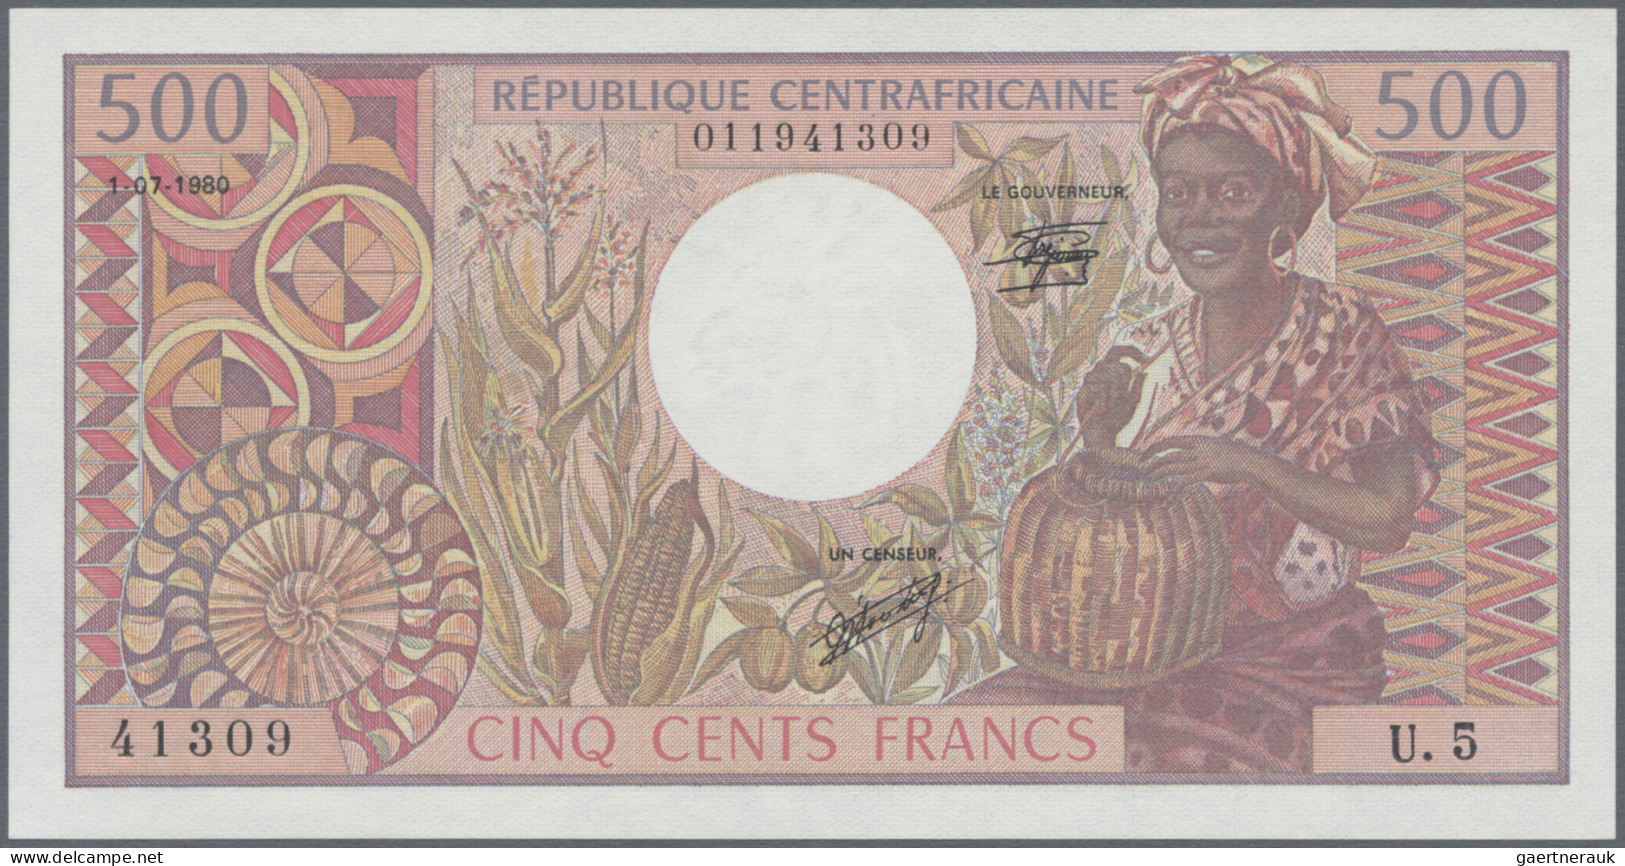 Central African Republic: Banque Des États De L'Afrique Centrale - République Ce - Central African Republic